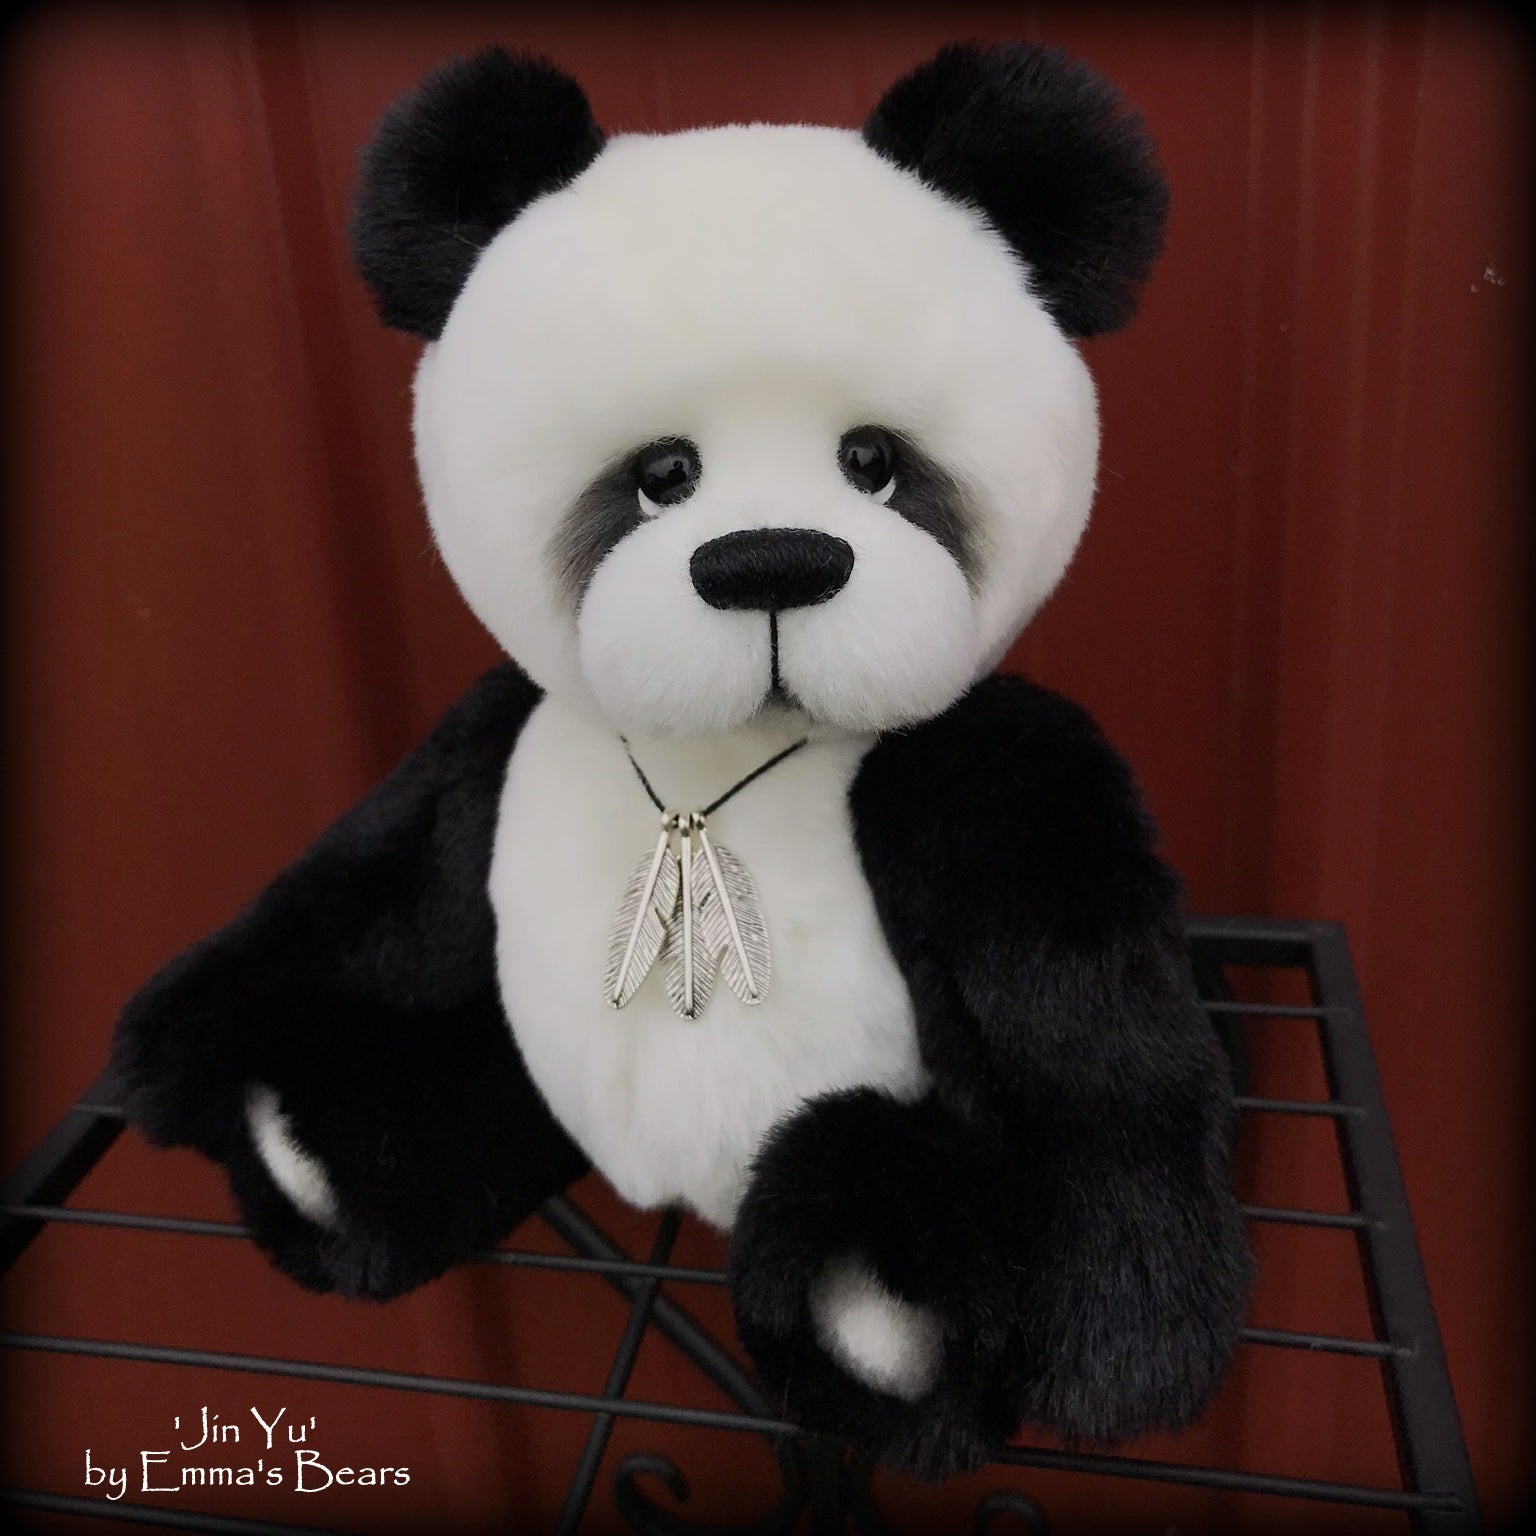 Jin Yu - 9" faux fur artist panda bear by Emmas Bears - OOAK